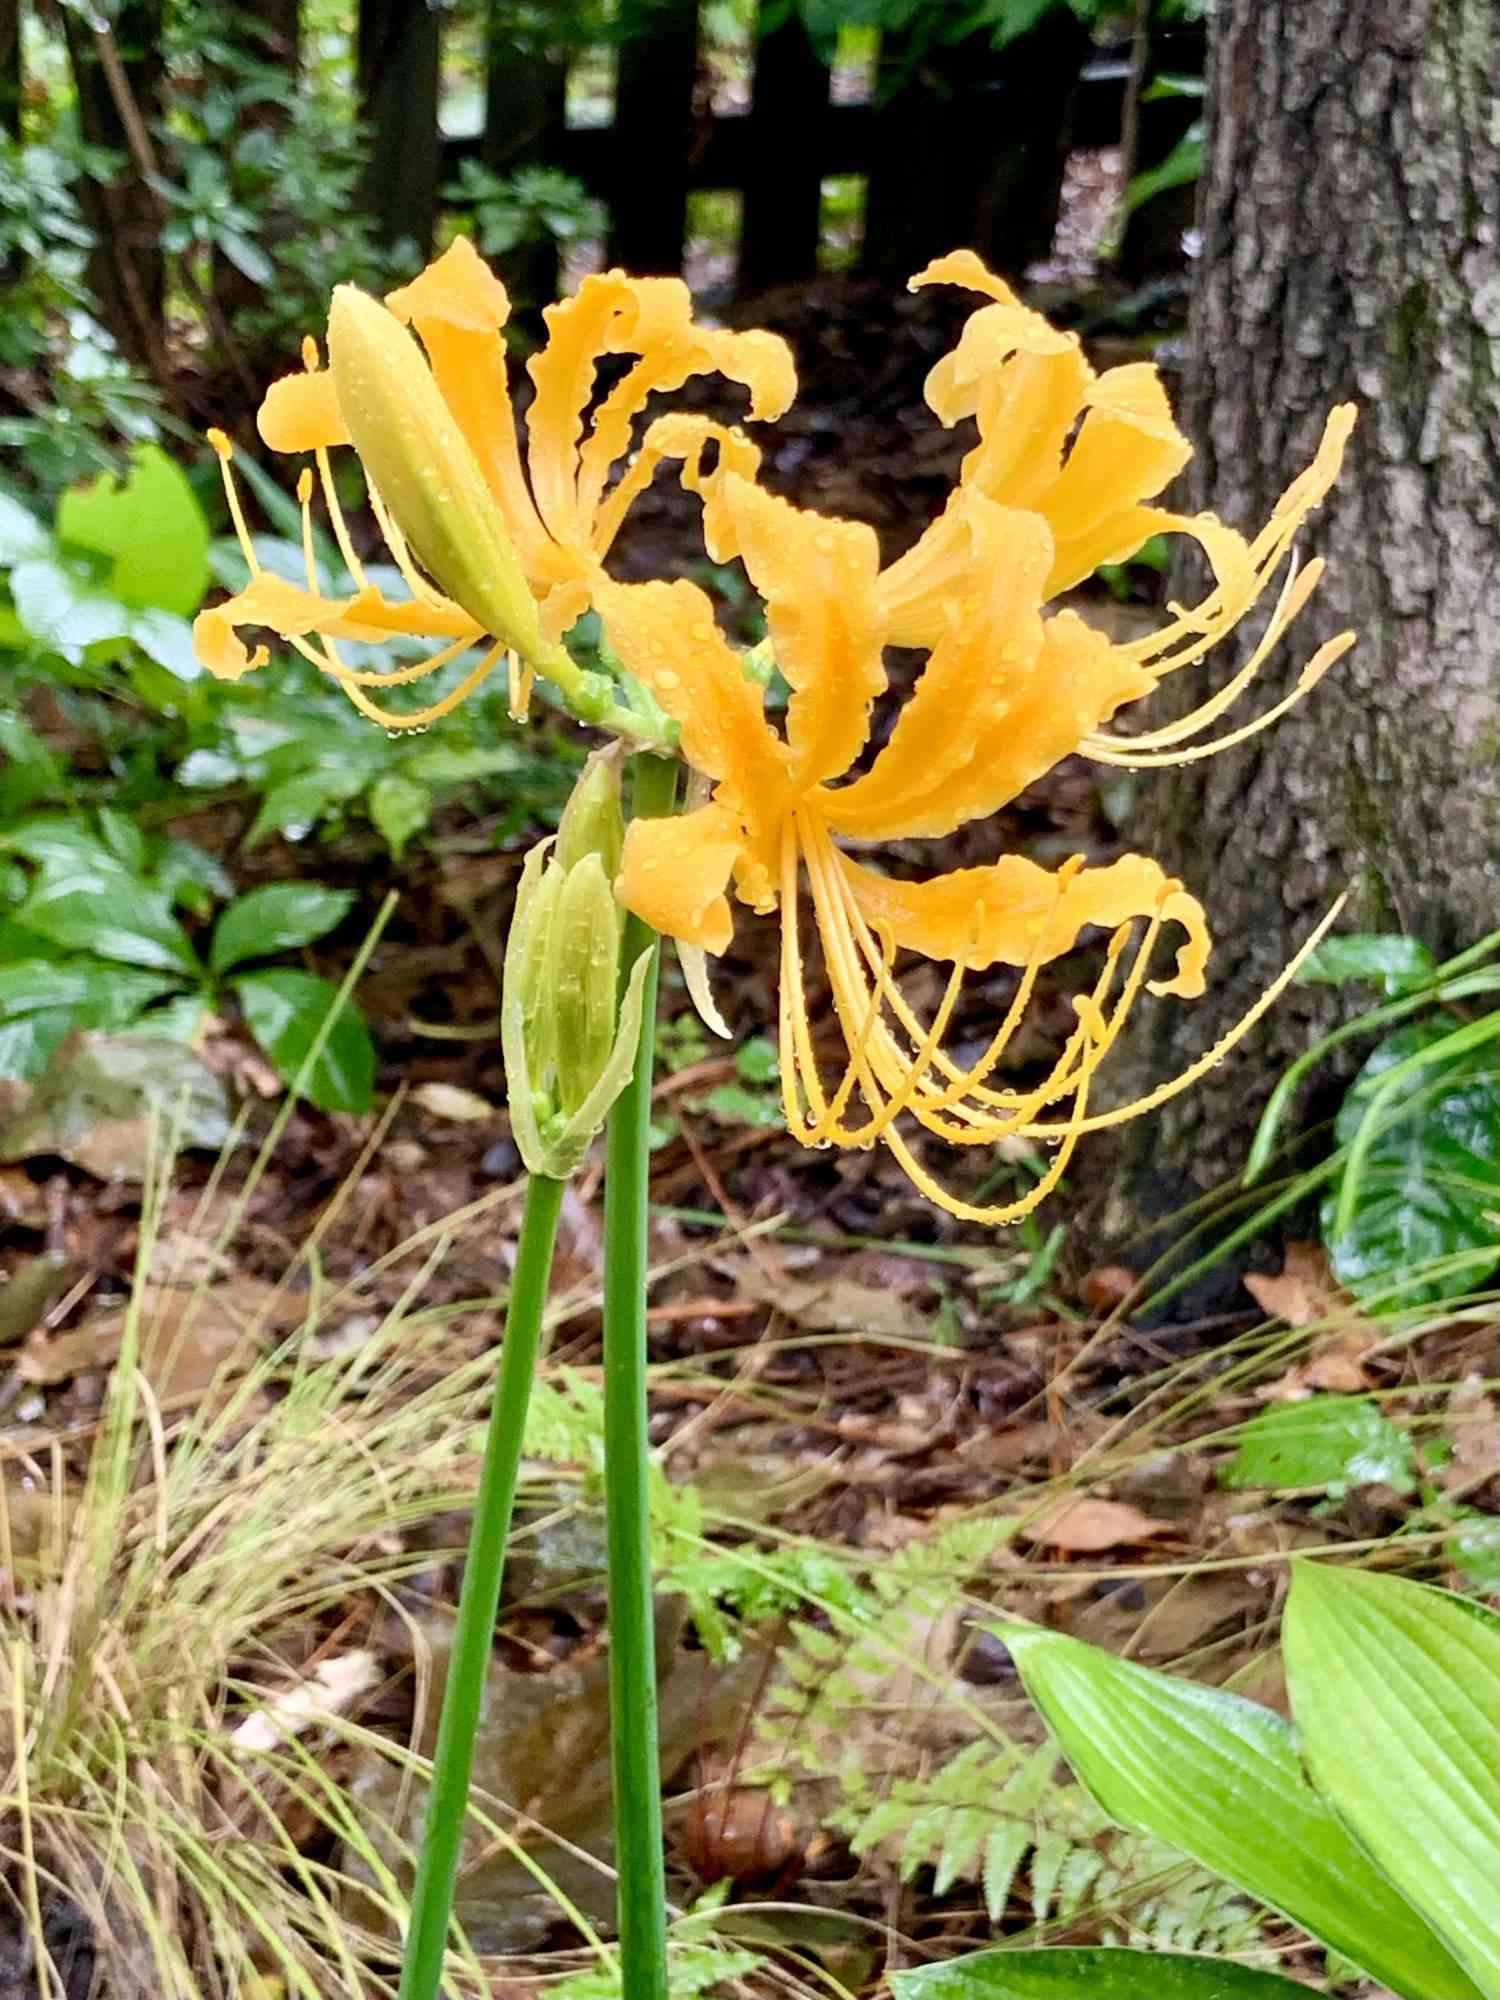 Golden Spider Lily